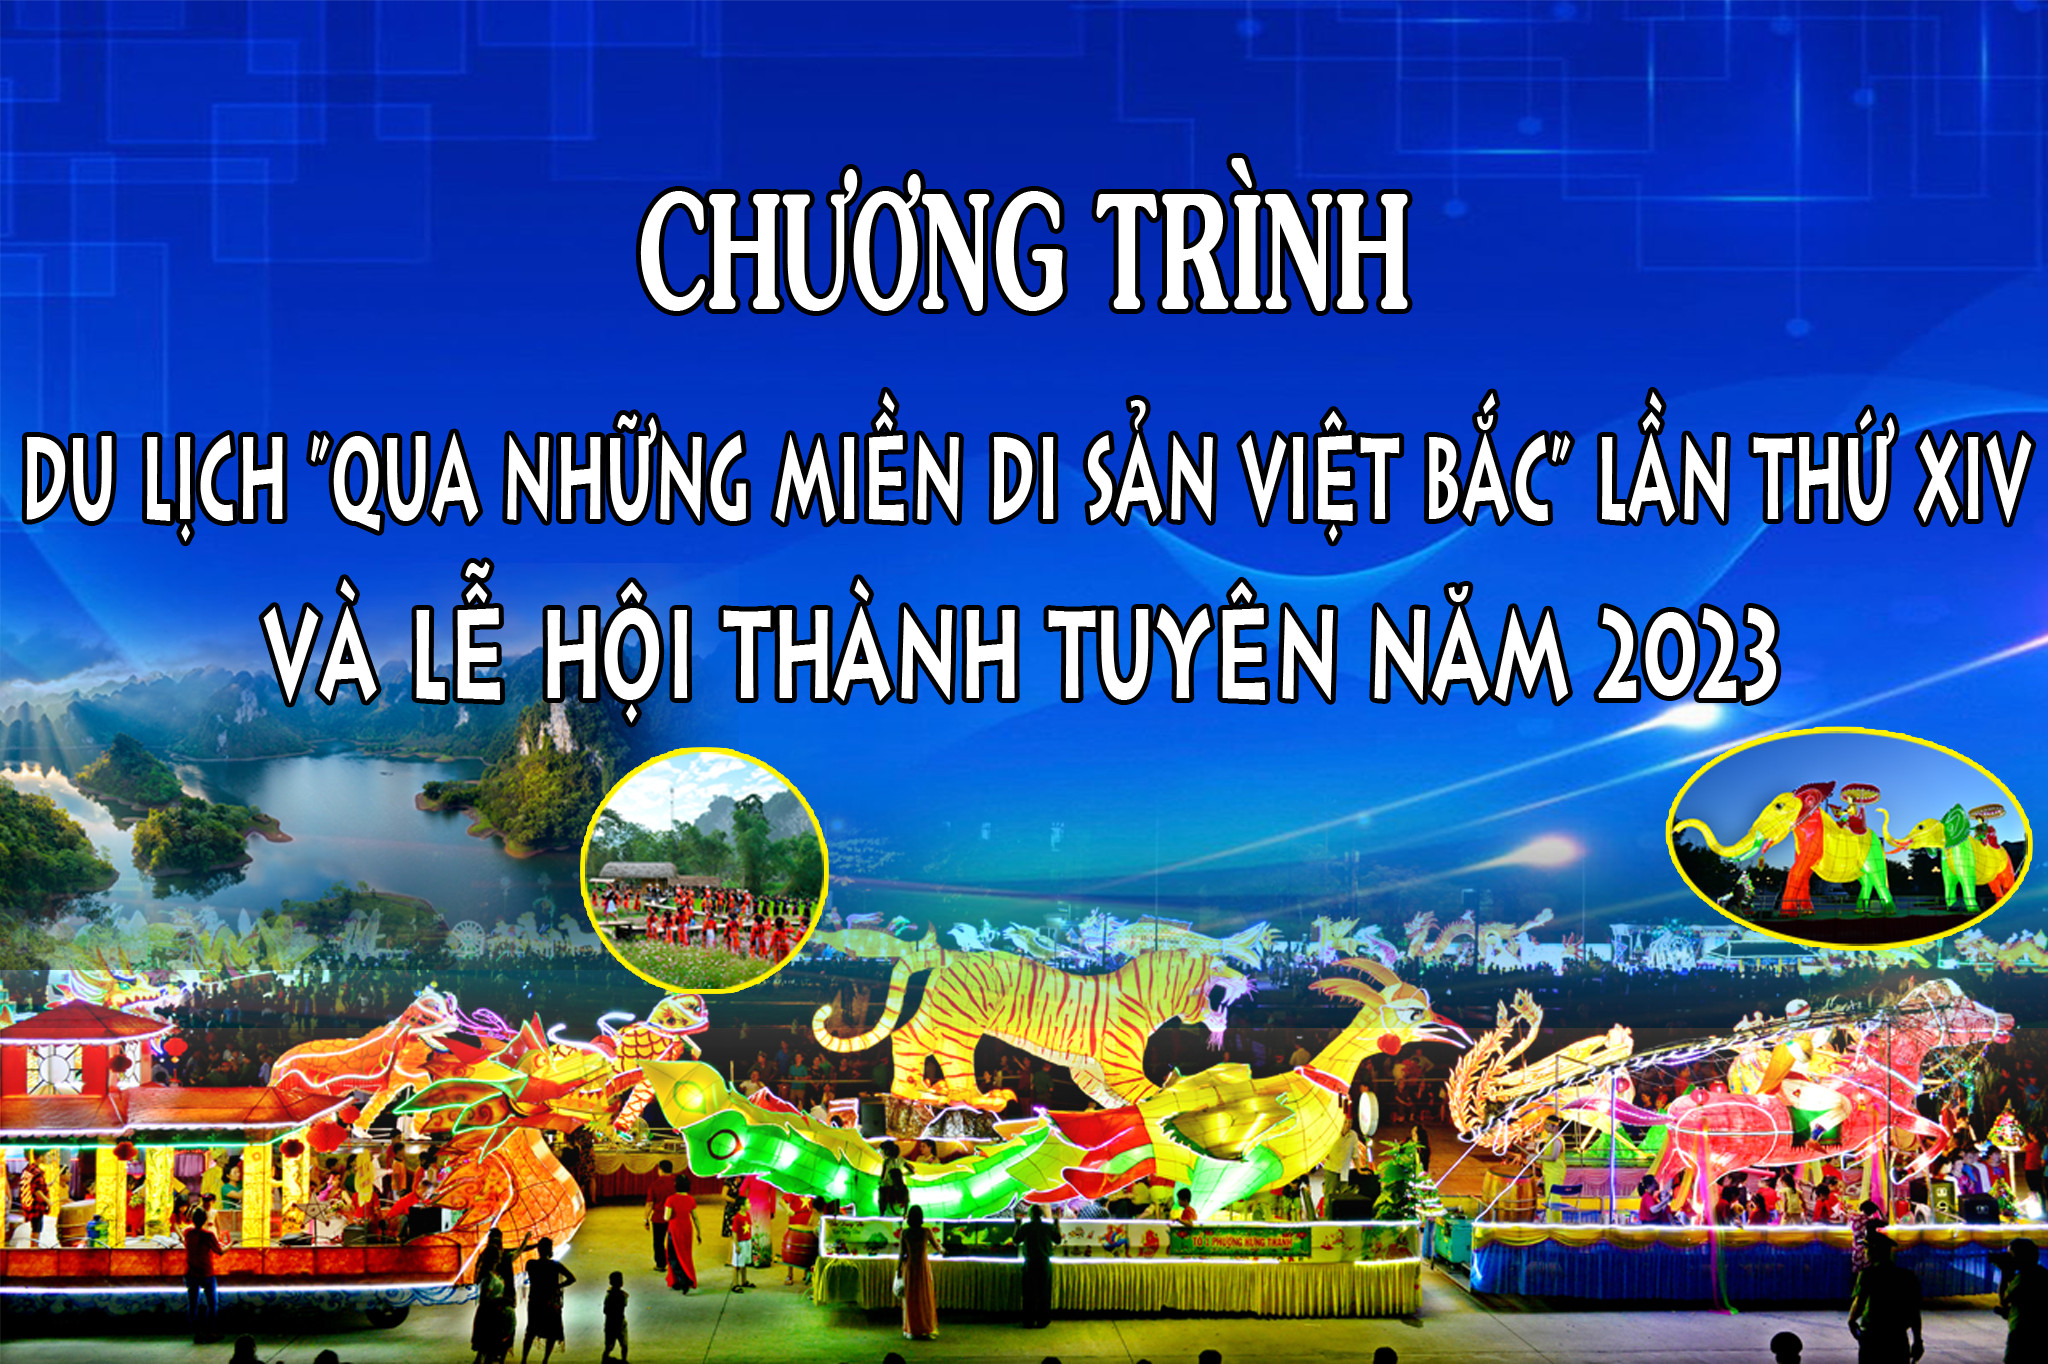 Lịch tổ chức các hoạt động trong Chương trình du lịch "Qua những miền di sản Việt Bắc " lần thứ XIV và Lễ hội Thành Tuyên năm 2023